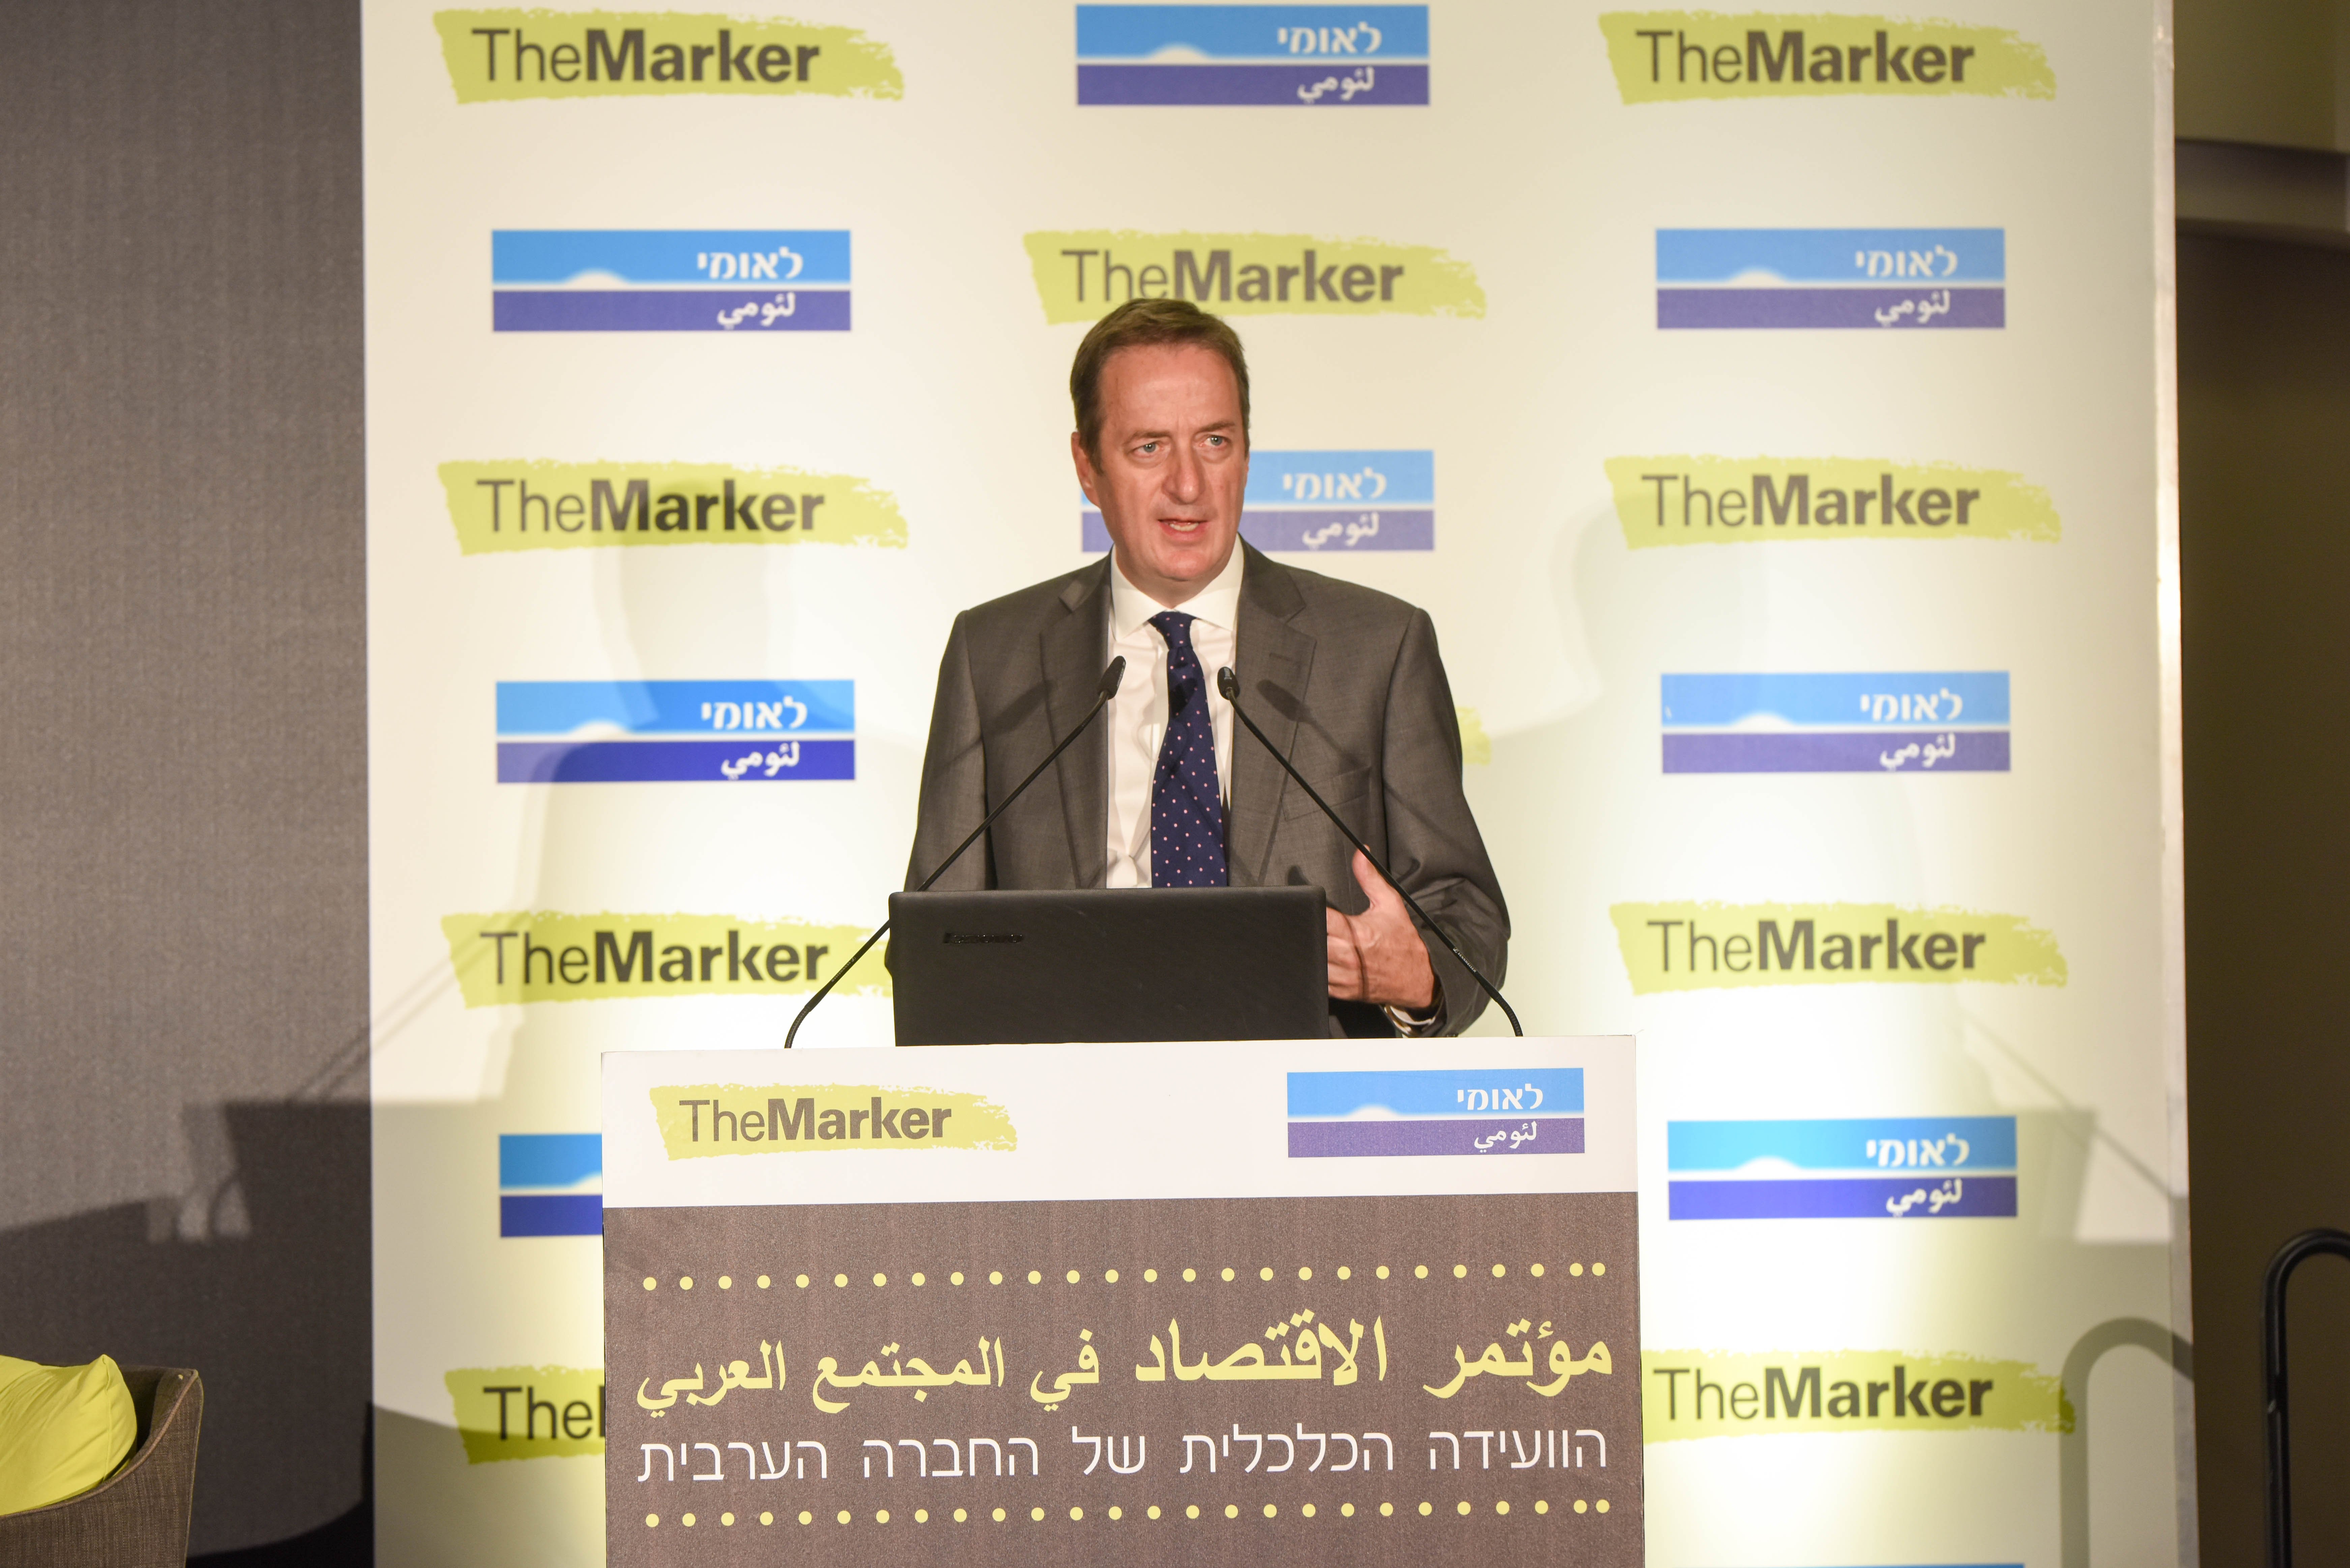 "مؤتمر الاقتصاد في المجتمع العربي" لـ TheMarker وبنك لئومي الثالث يحقق نجاحاً كبيراً-15